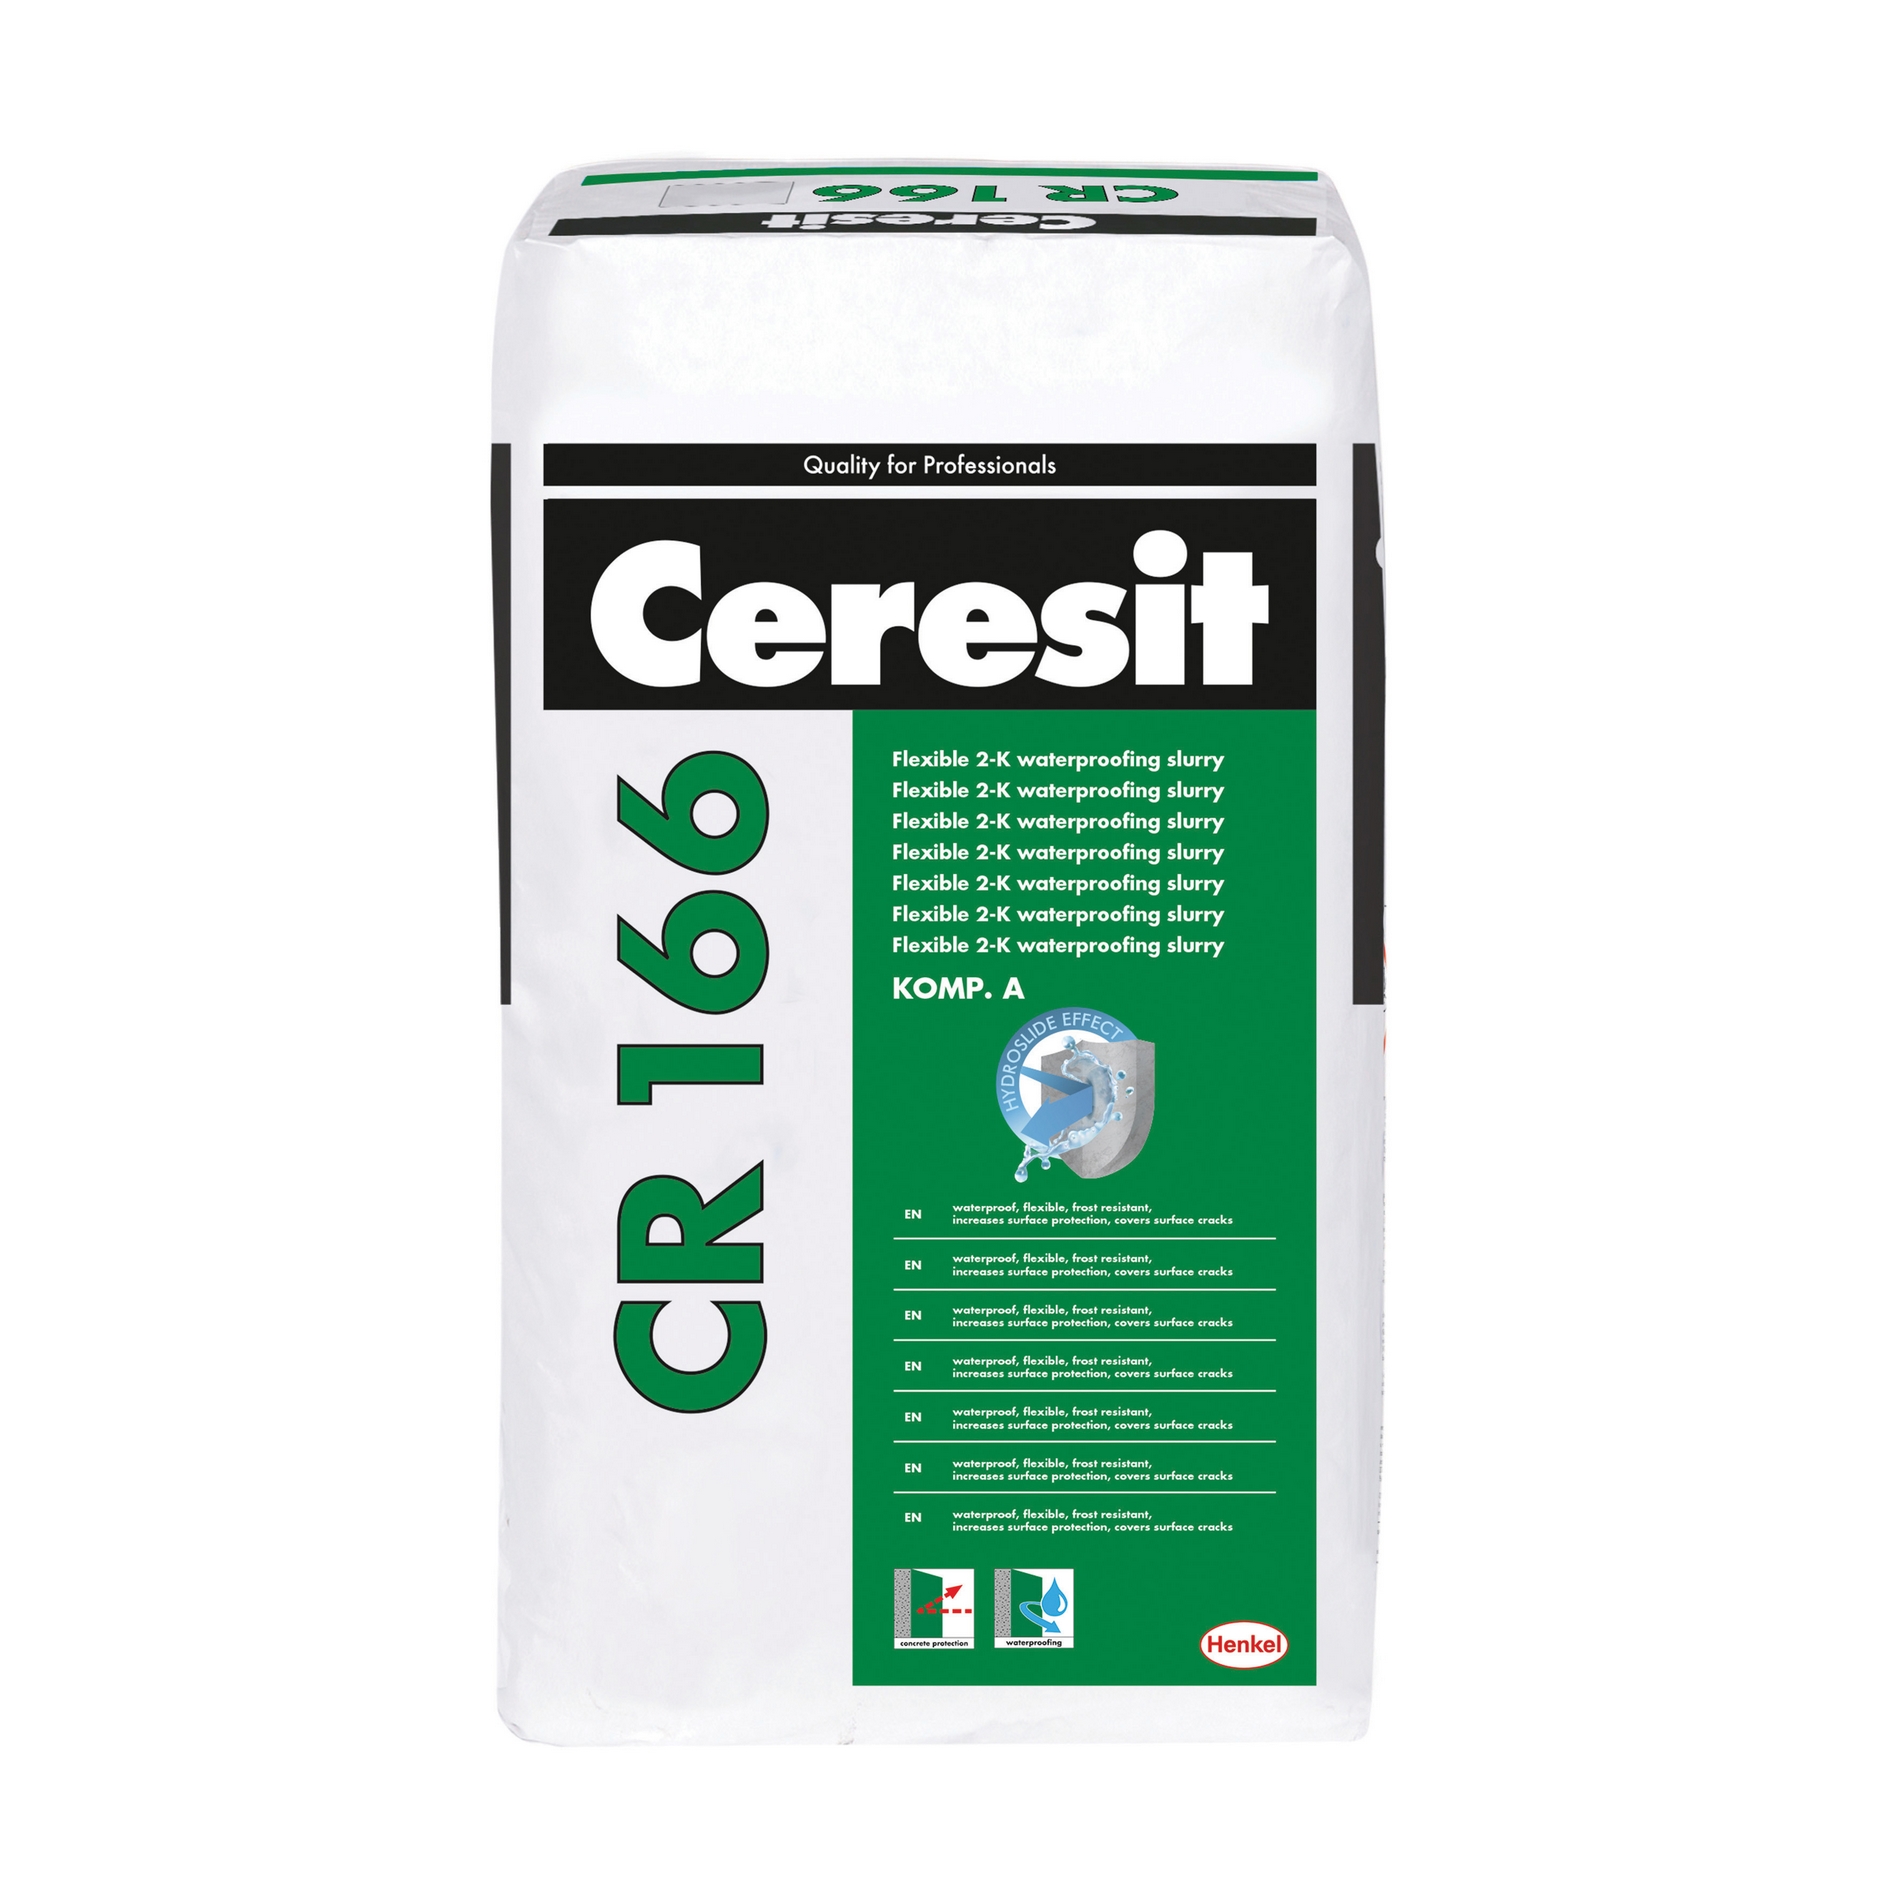 Ceresit CR 166 kétkomponensű vízzáró cementhabarcs